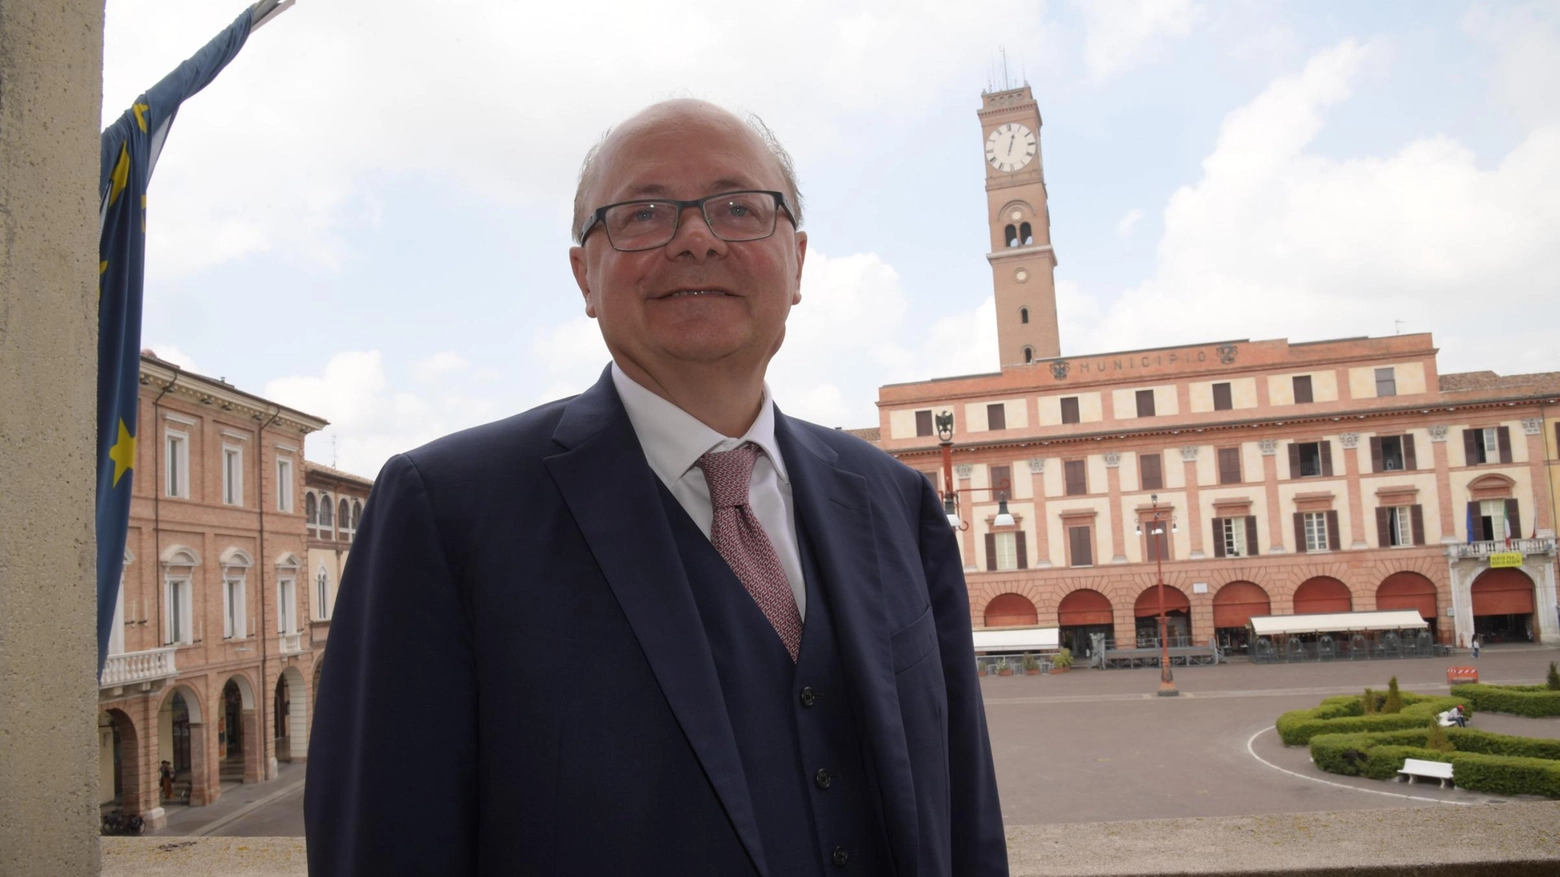 Il presidente della Camera di commercio Romagna - Forlì-Cesena e Rimini "Il traino è dato dalle costruzioni. Bene anche servizi alle imprese e turismo. Ricadute gravissime se si fermano le catene internazionali del commercio".